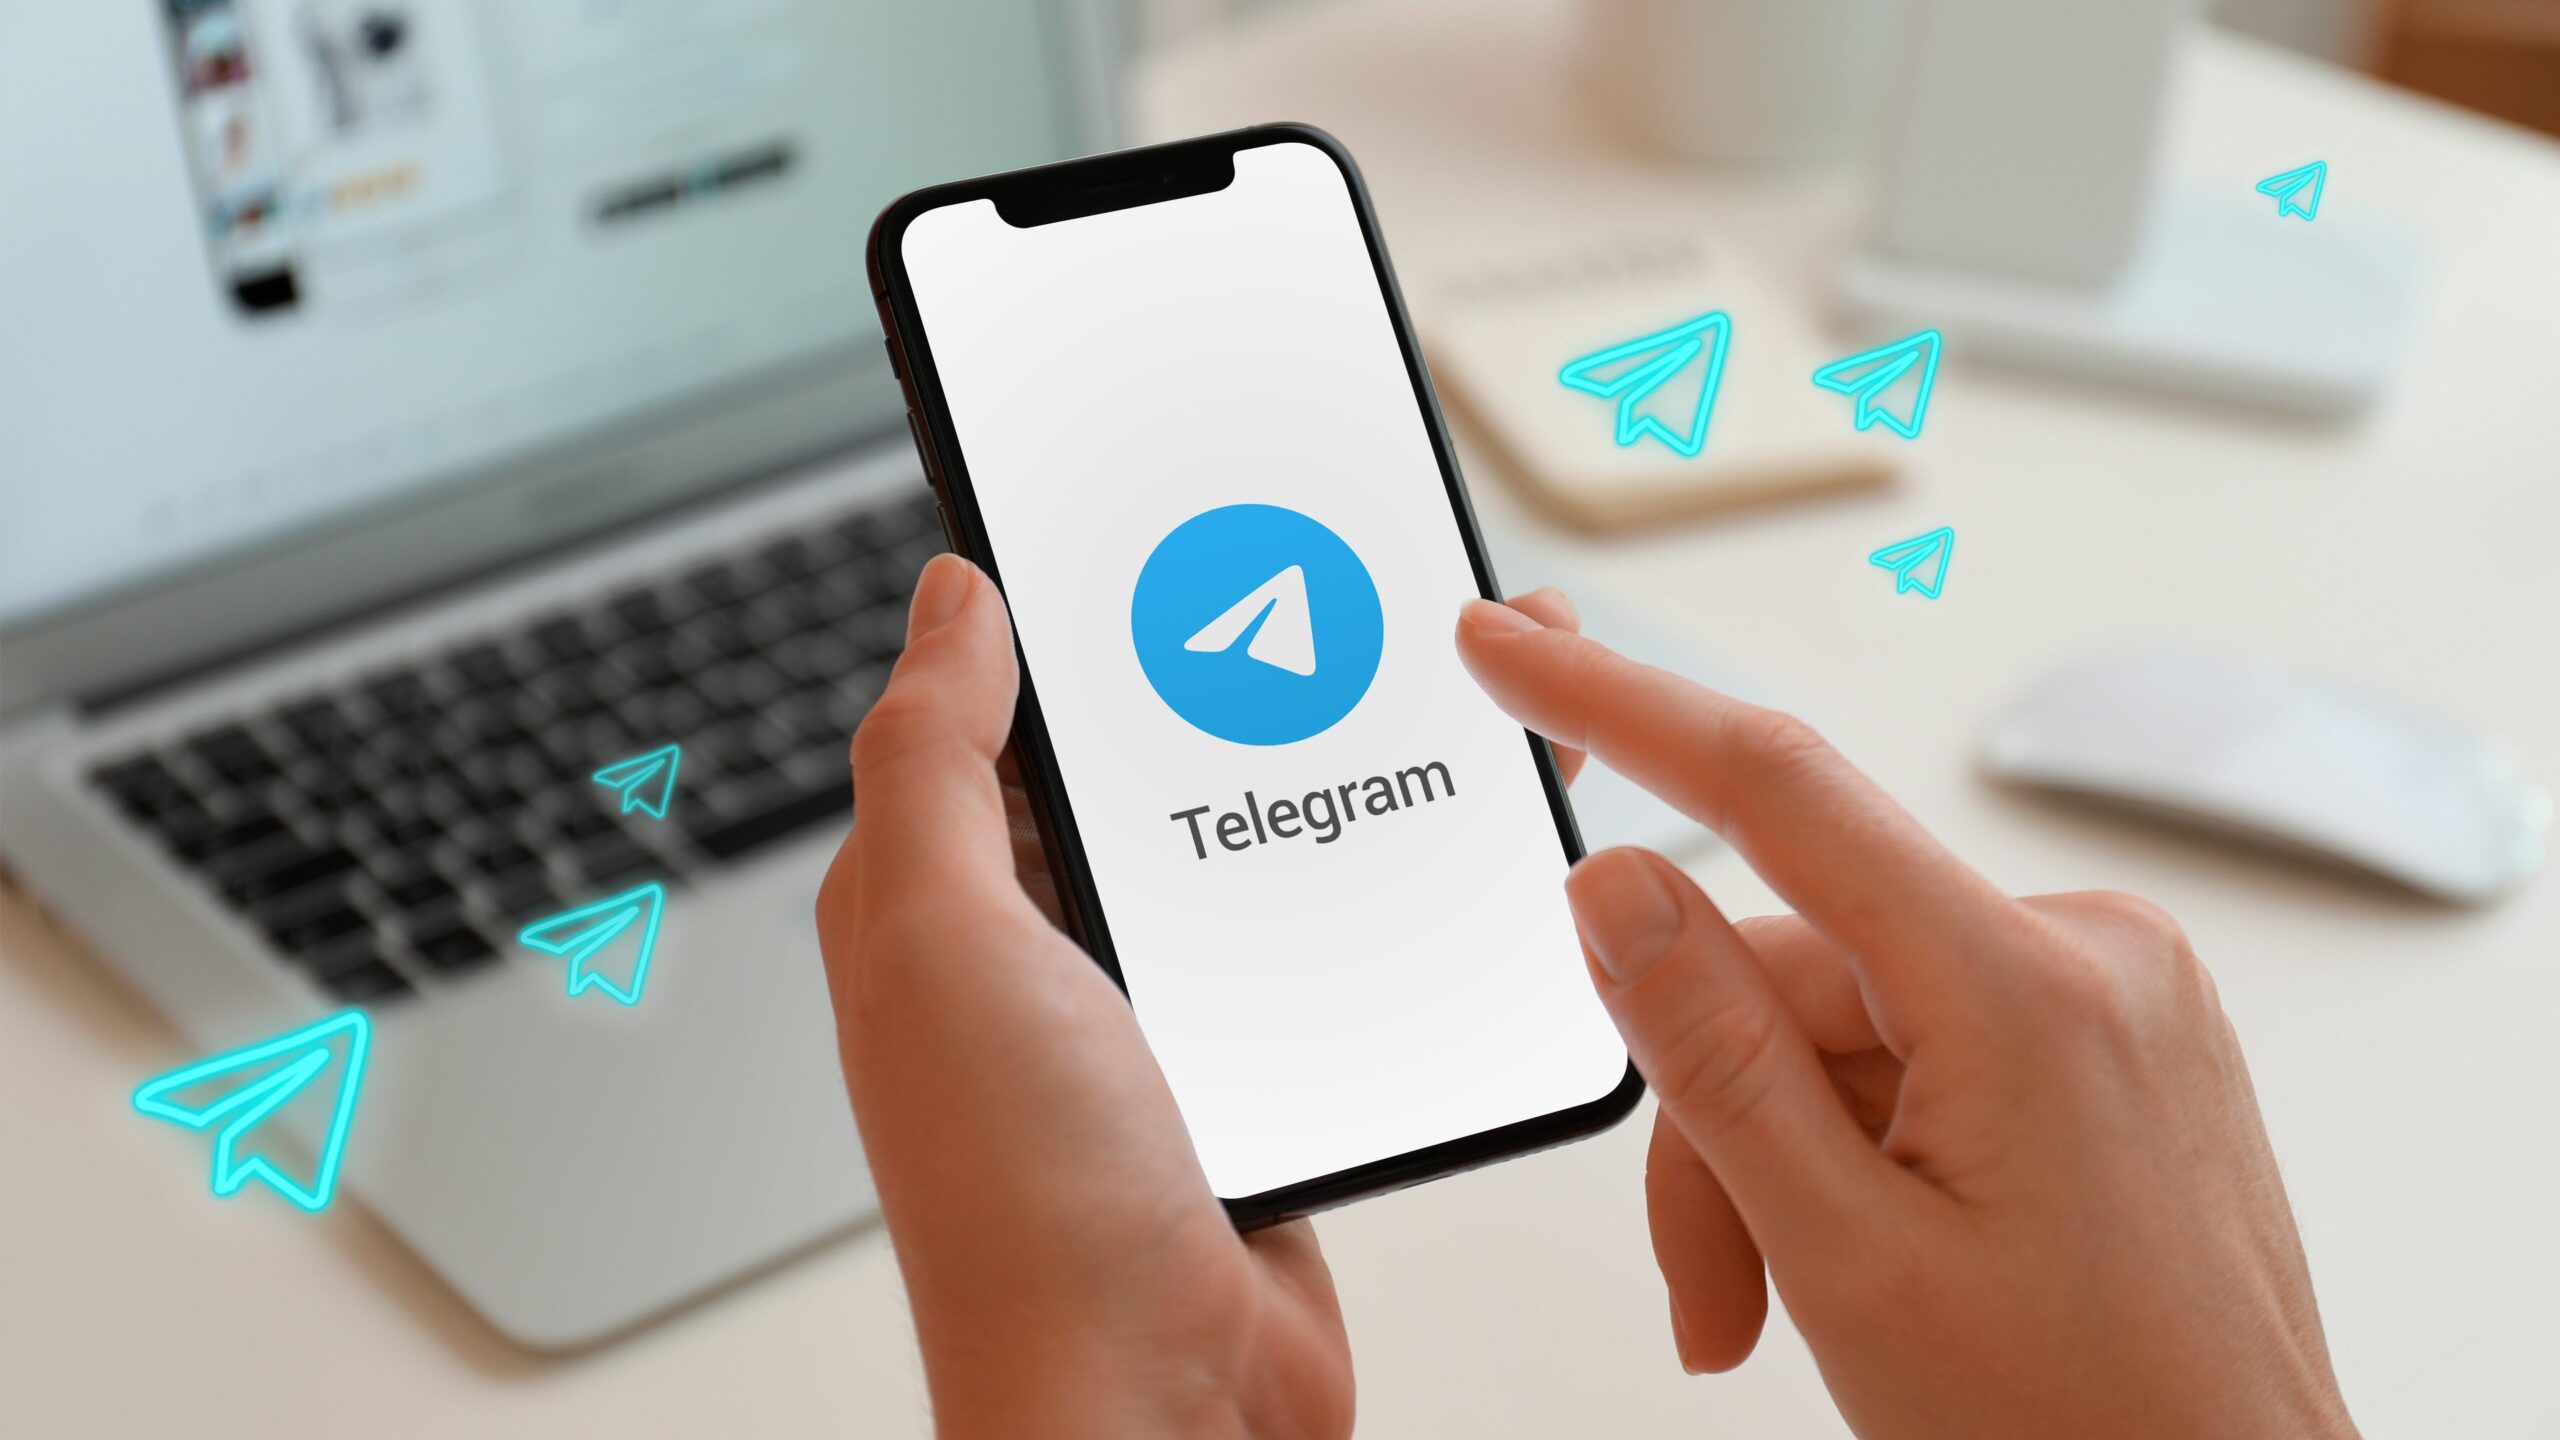  Telegram câștigă 70 de milioane de utilizatori noi în doar o zi după întreruperea Facebook